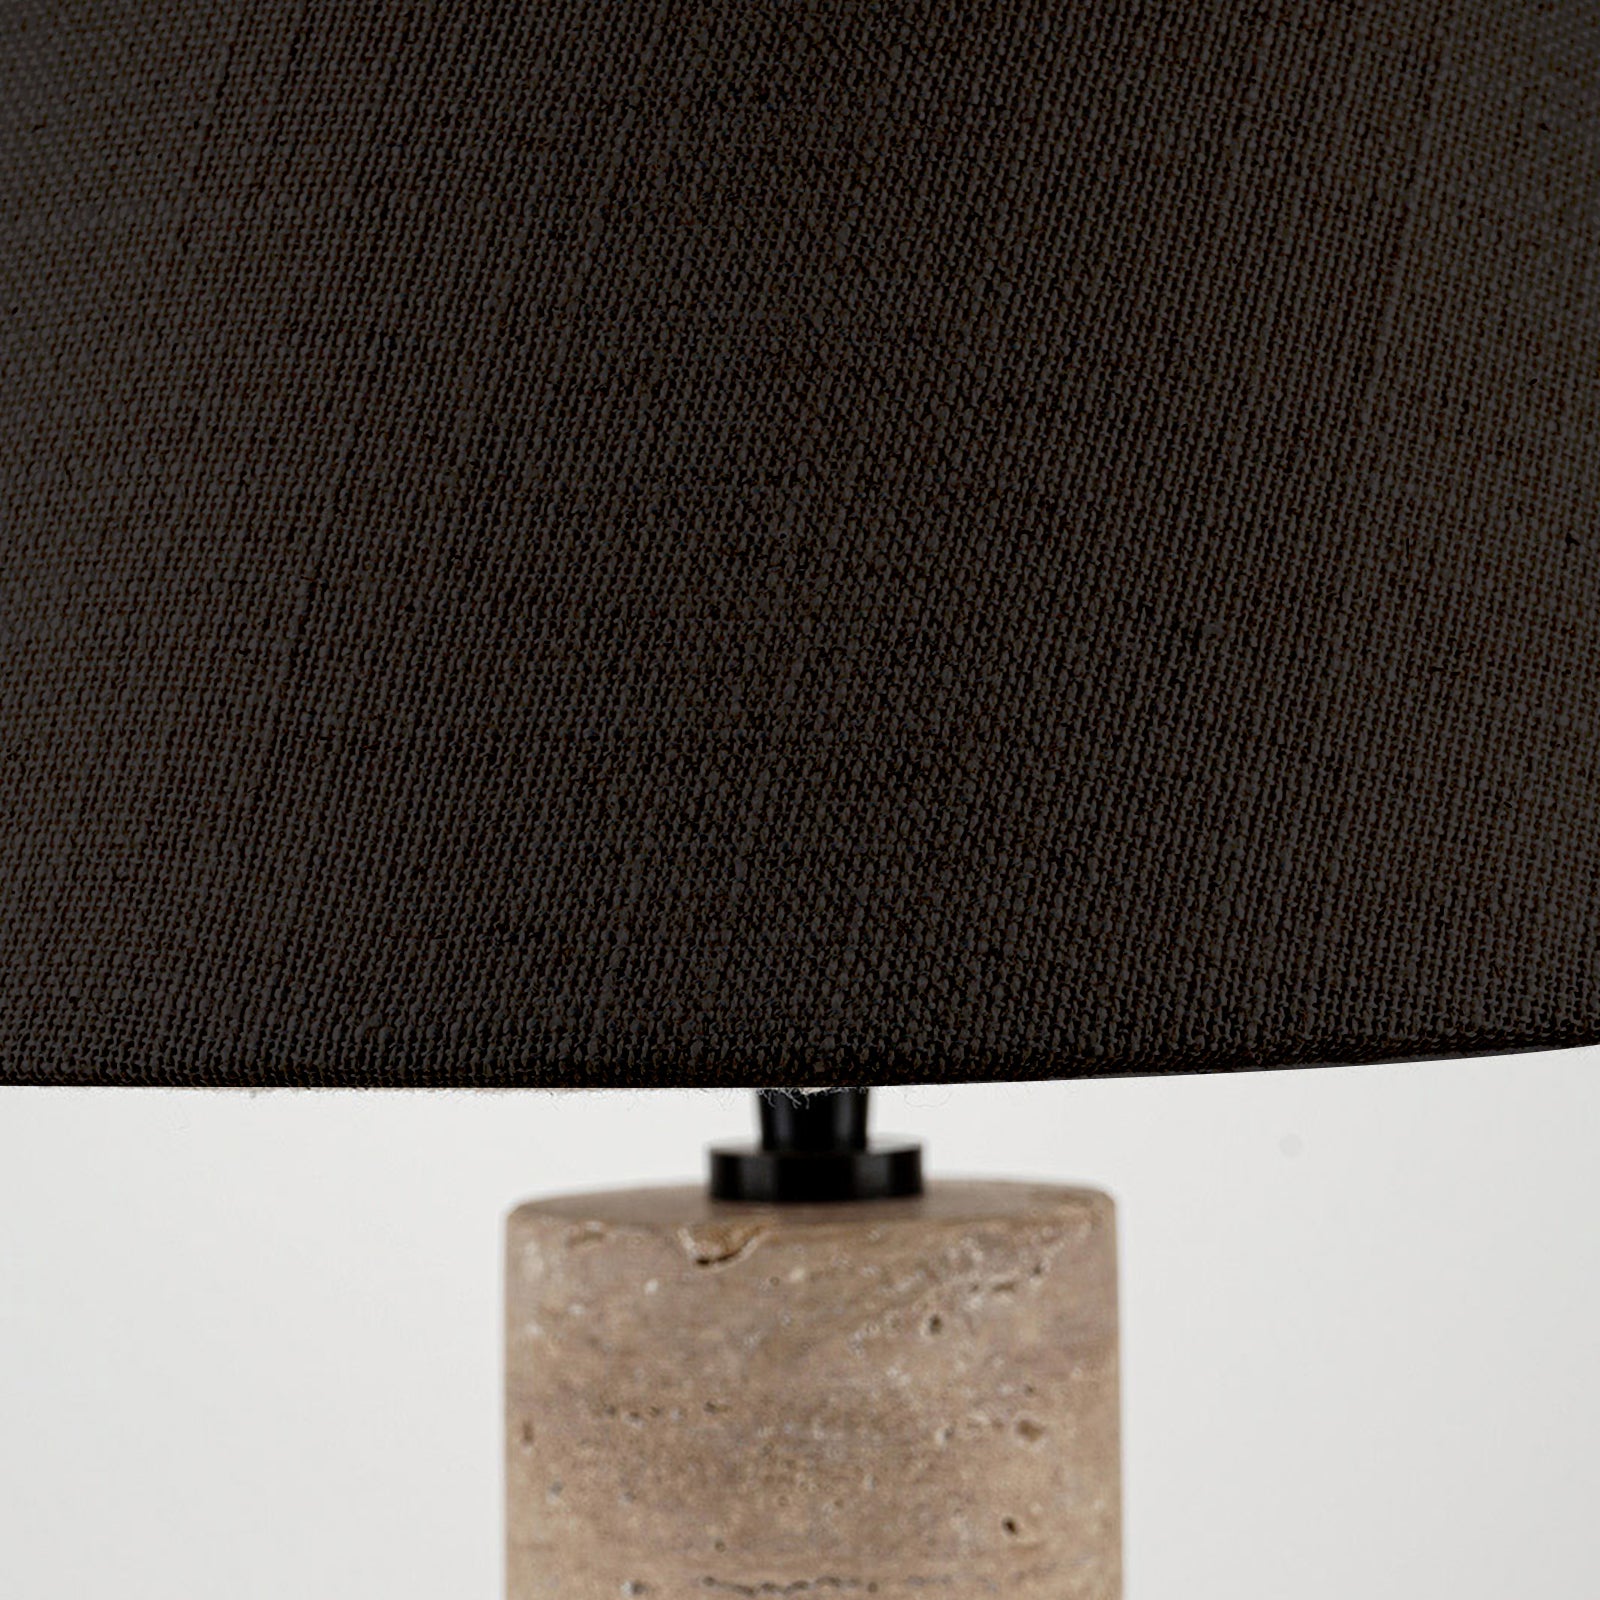 Tara Lamp  - WS Living - UAE - Table Lamp Wood and steel Furnitures - Dubai